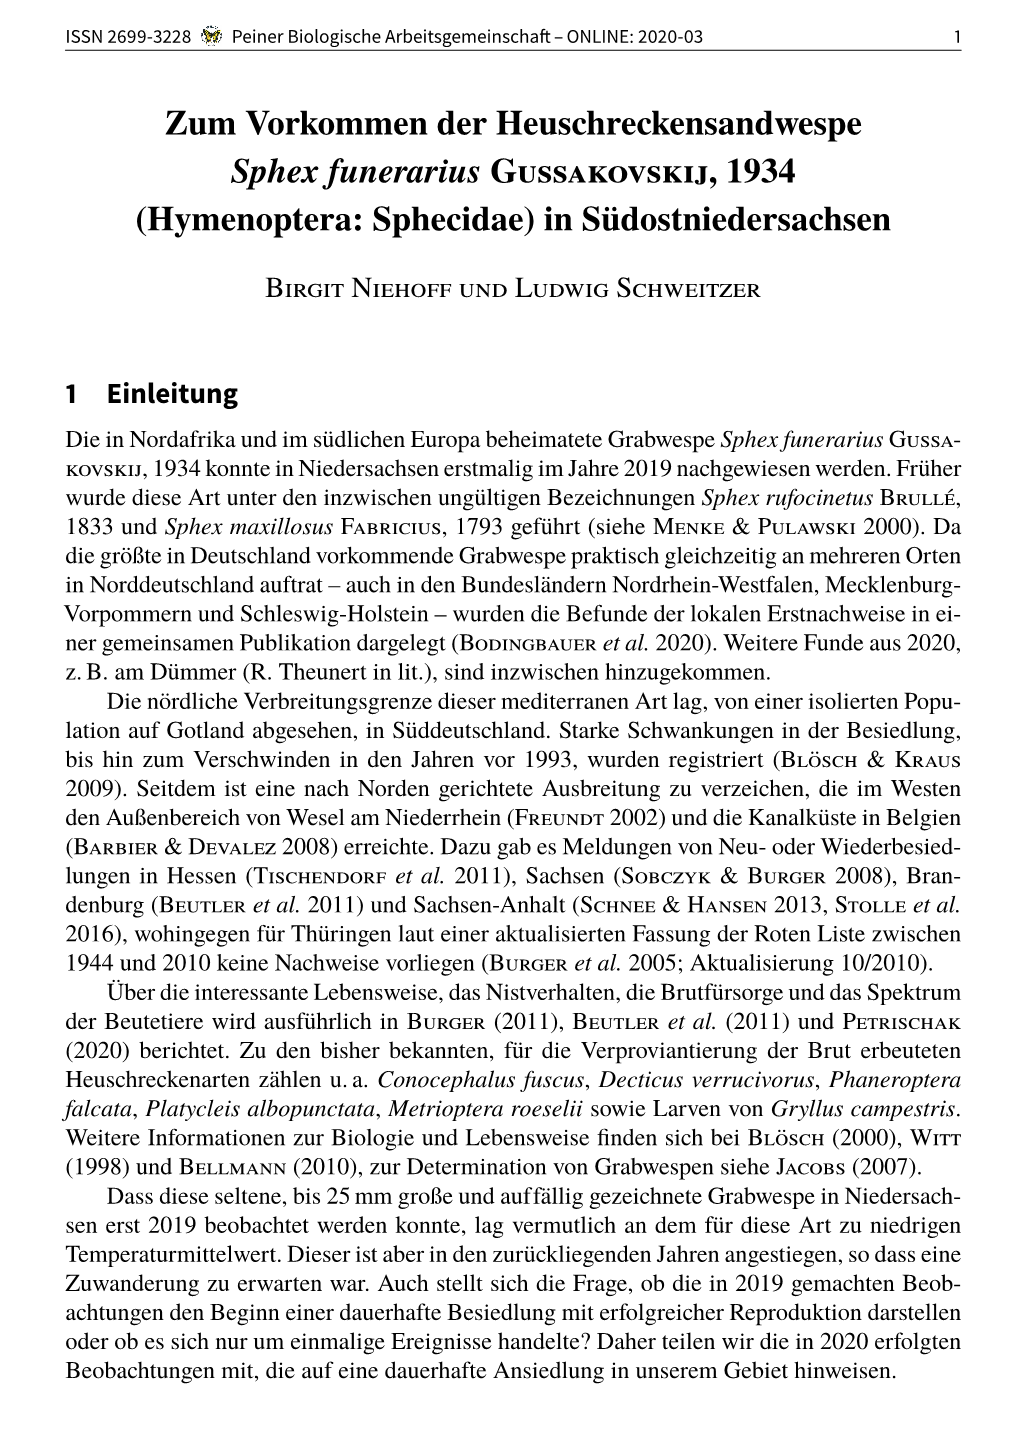 Zum Vorkommen Der Heuschreckensandwespe Sphex Funerarius Gussakovskij, 1934 (Hymenoptera: Sphecidae) in Südostniedersachsen